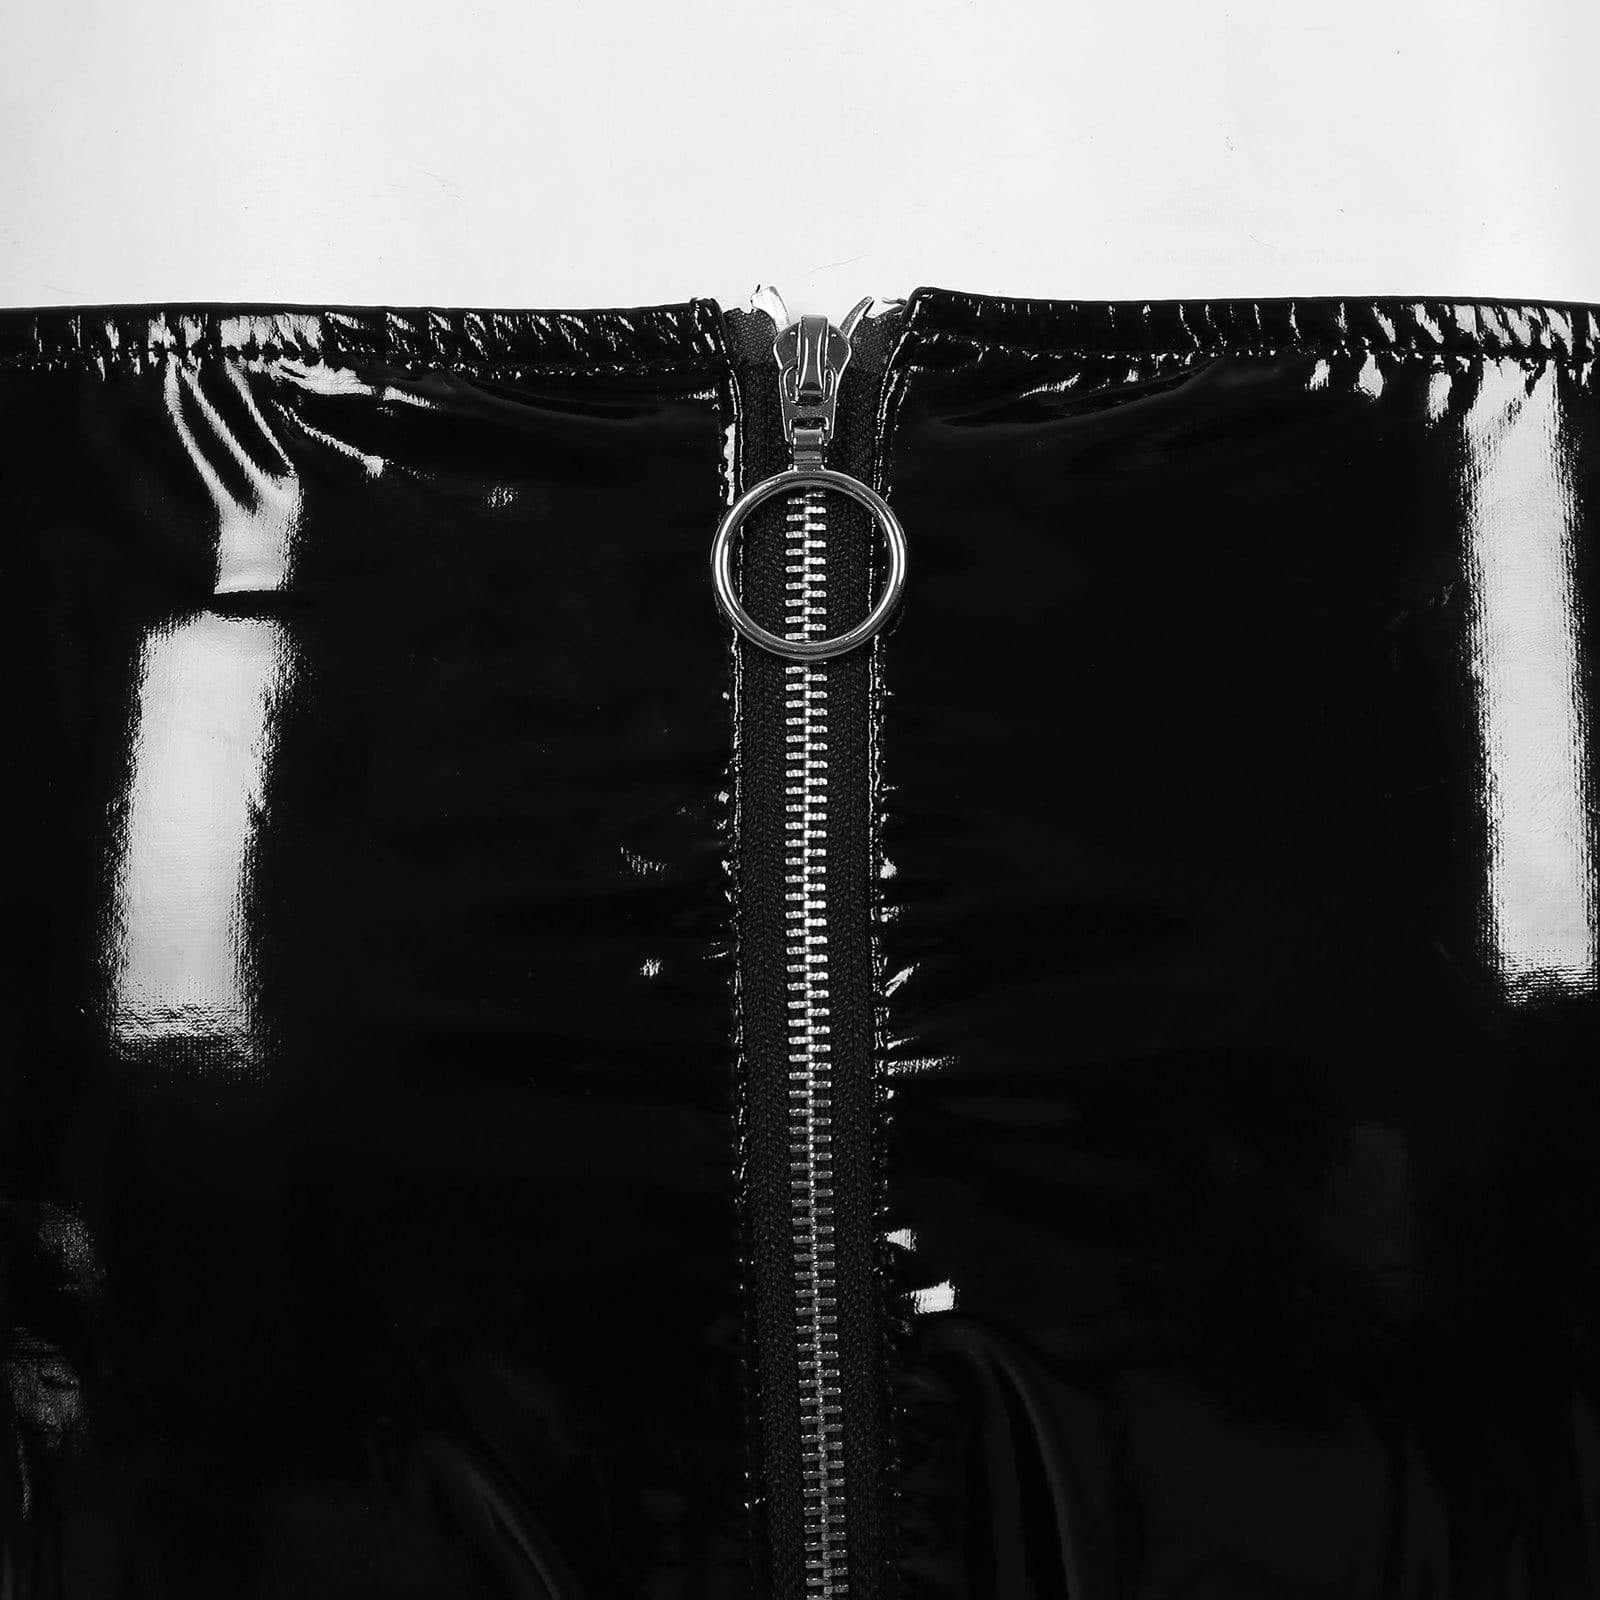 Kinky Cloth 351 Black Zipper Crotch Shiny Panties